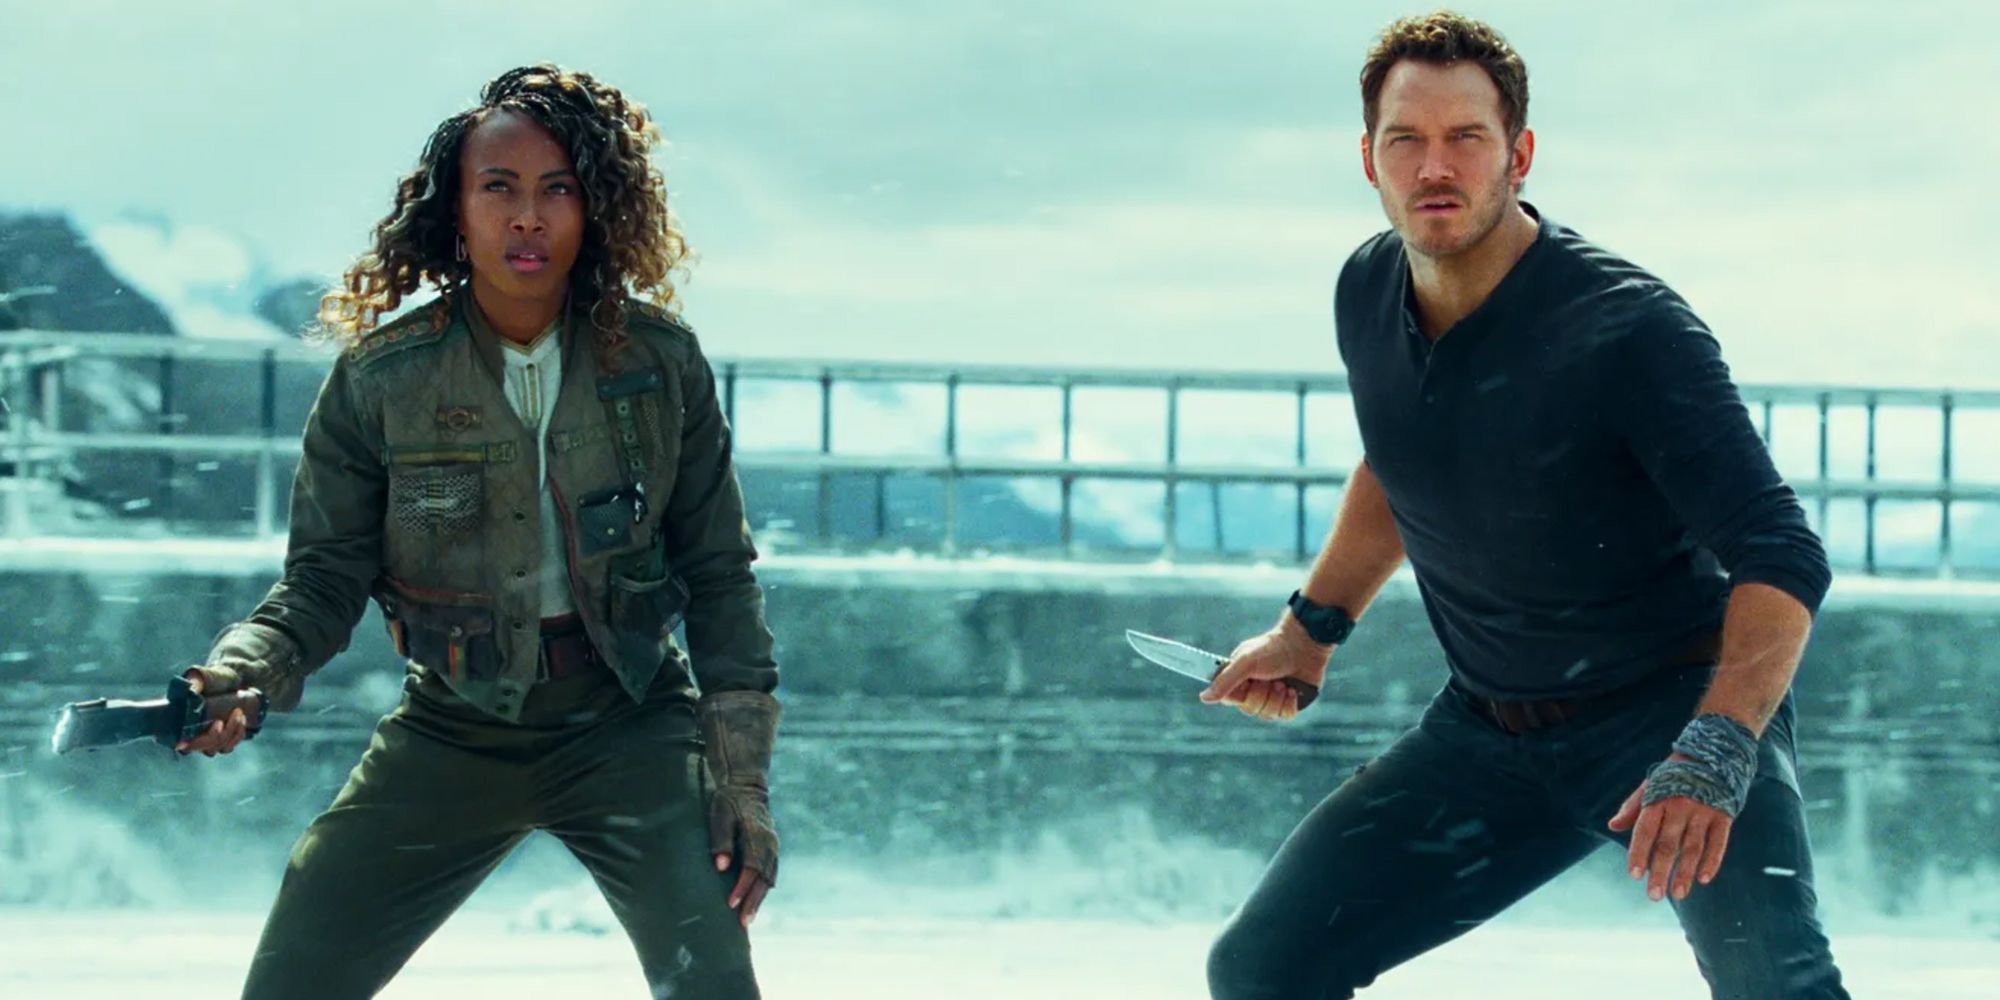 Jurassic World Dominion actors Chris Pratt and DeWanda Wise in battle stance